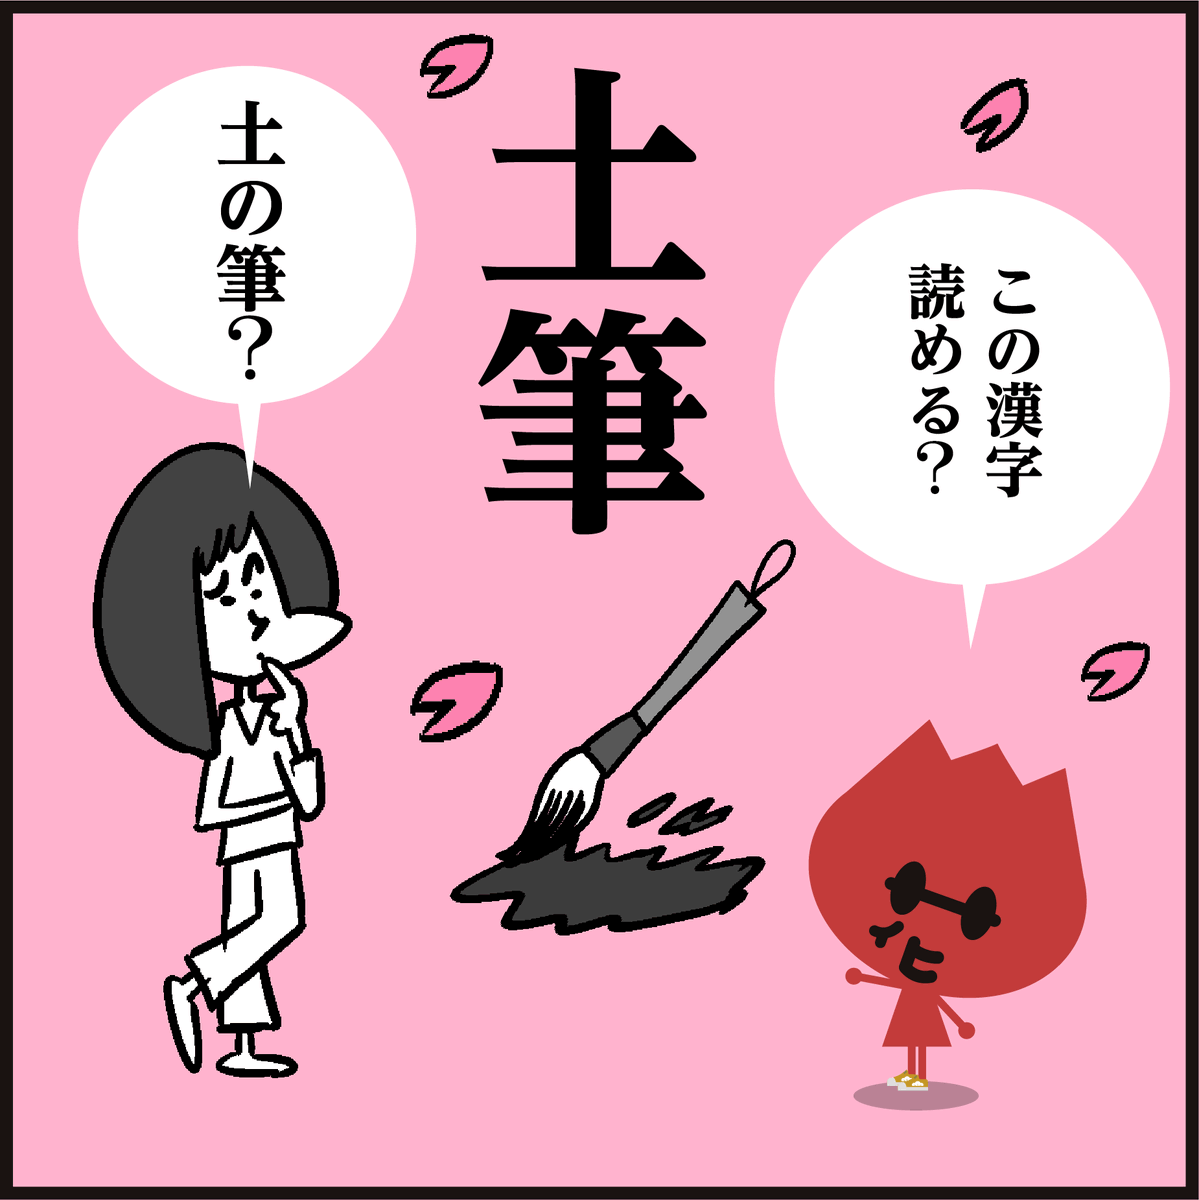 漢字【土筆】読めましたか?
「最近はあまり見かけない?
食べても美味しいそうですよ😋」#イラスト #4コマ漫画 #春 